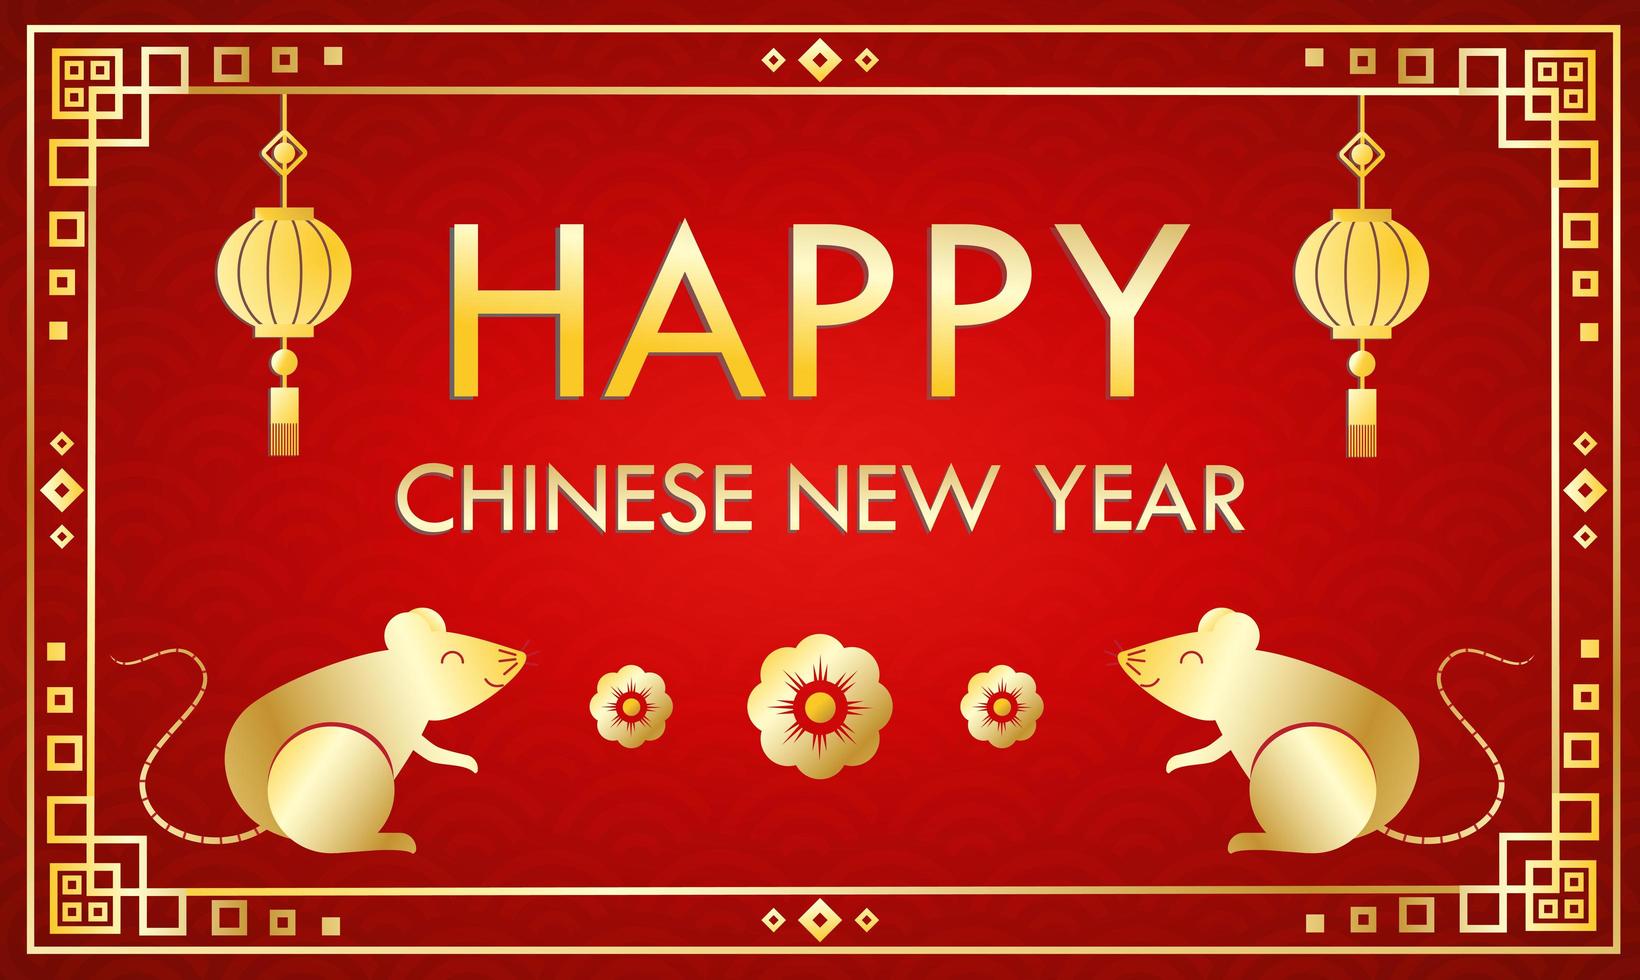 Feliz ano novo chinês modelo de cartão em fundo vermelho vetor